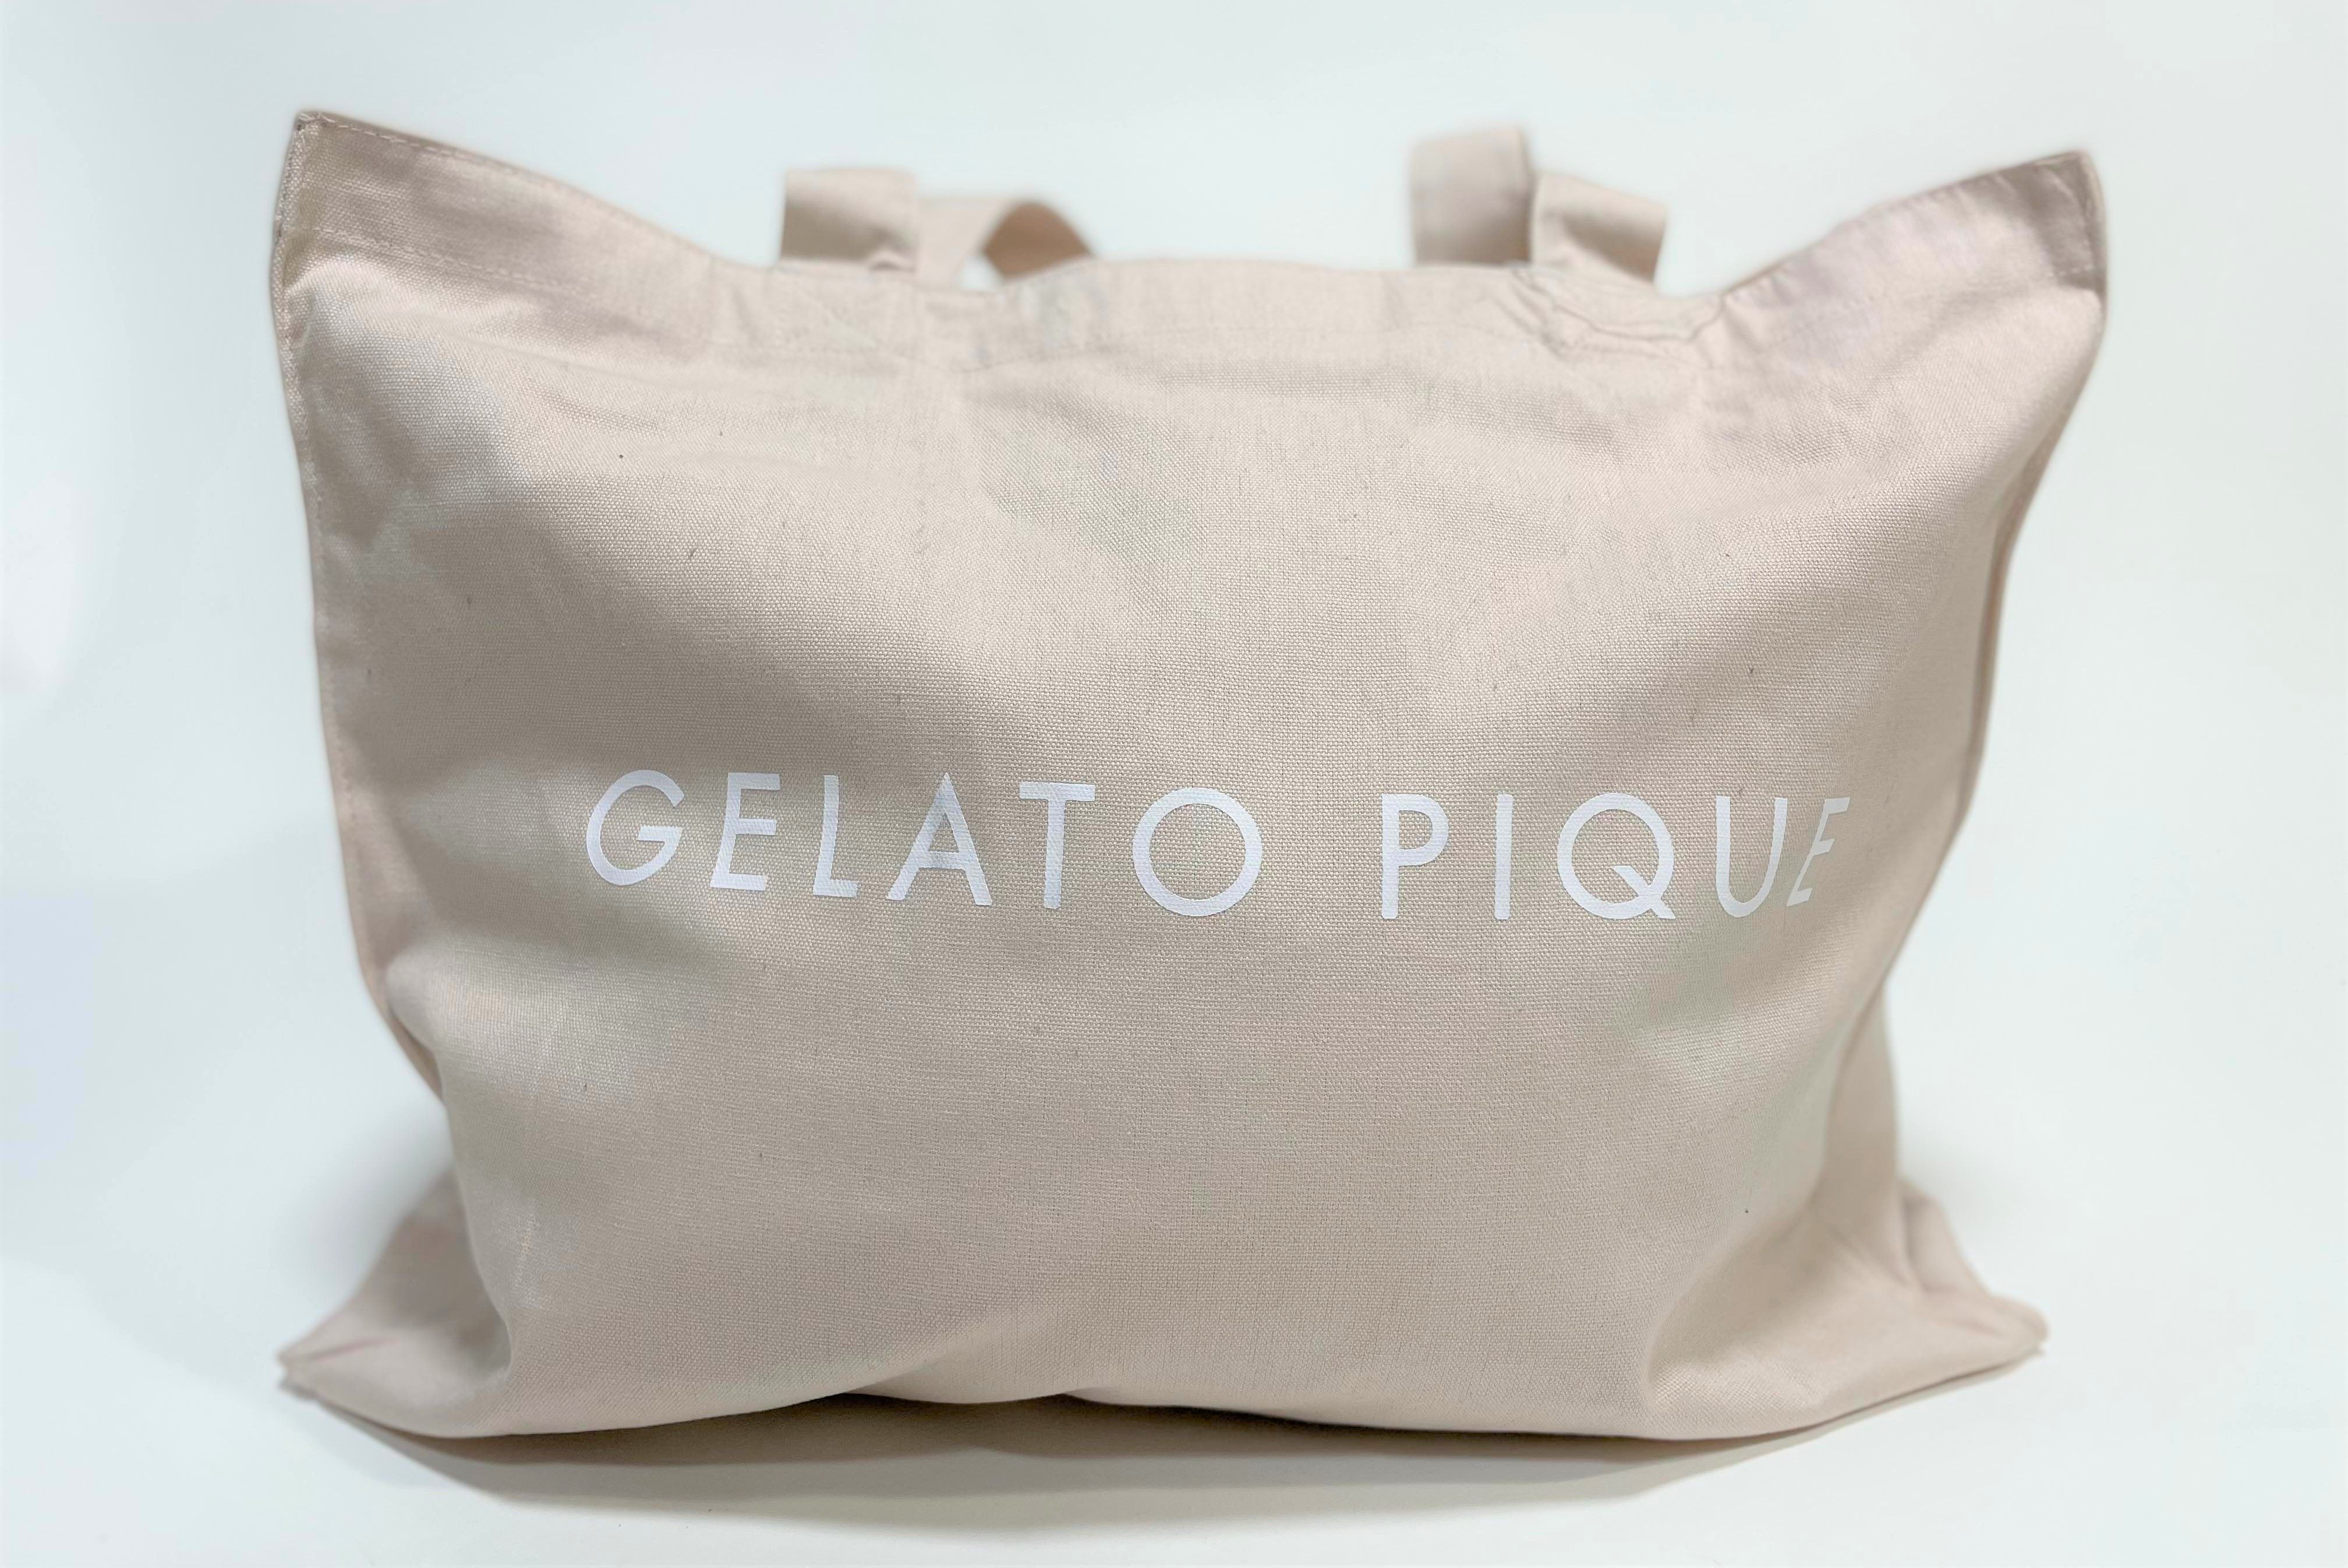 2022年福袋】『gelato pique ジェラートピケ』の袋に変化!! 布面積が 